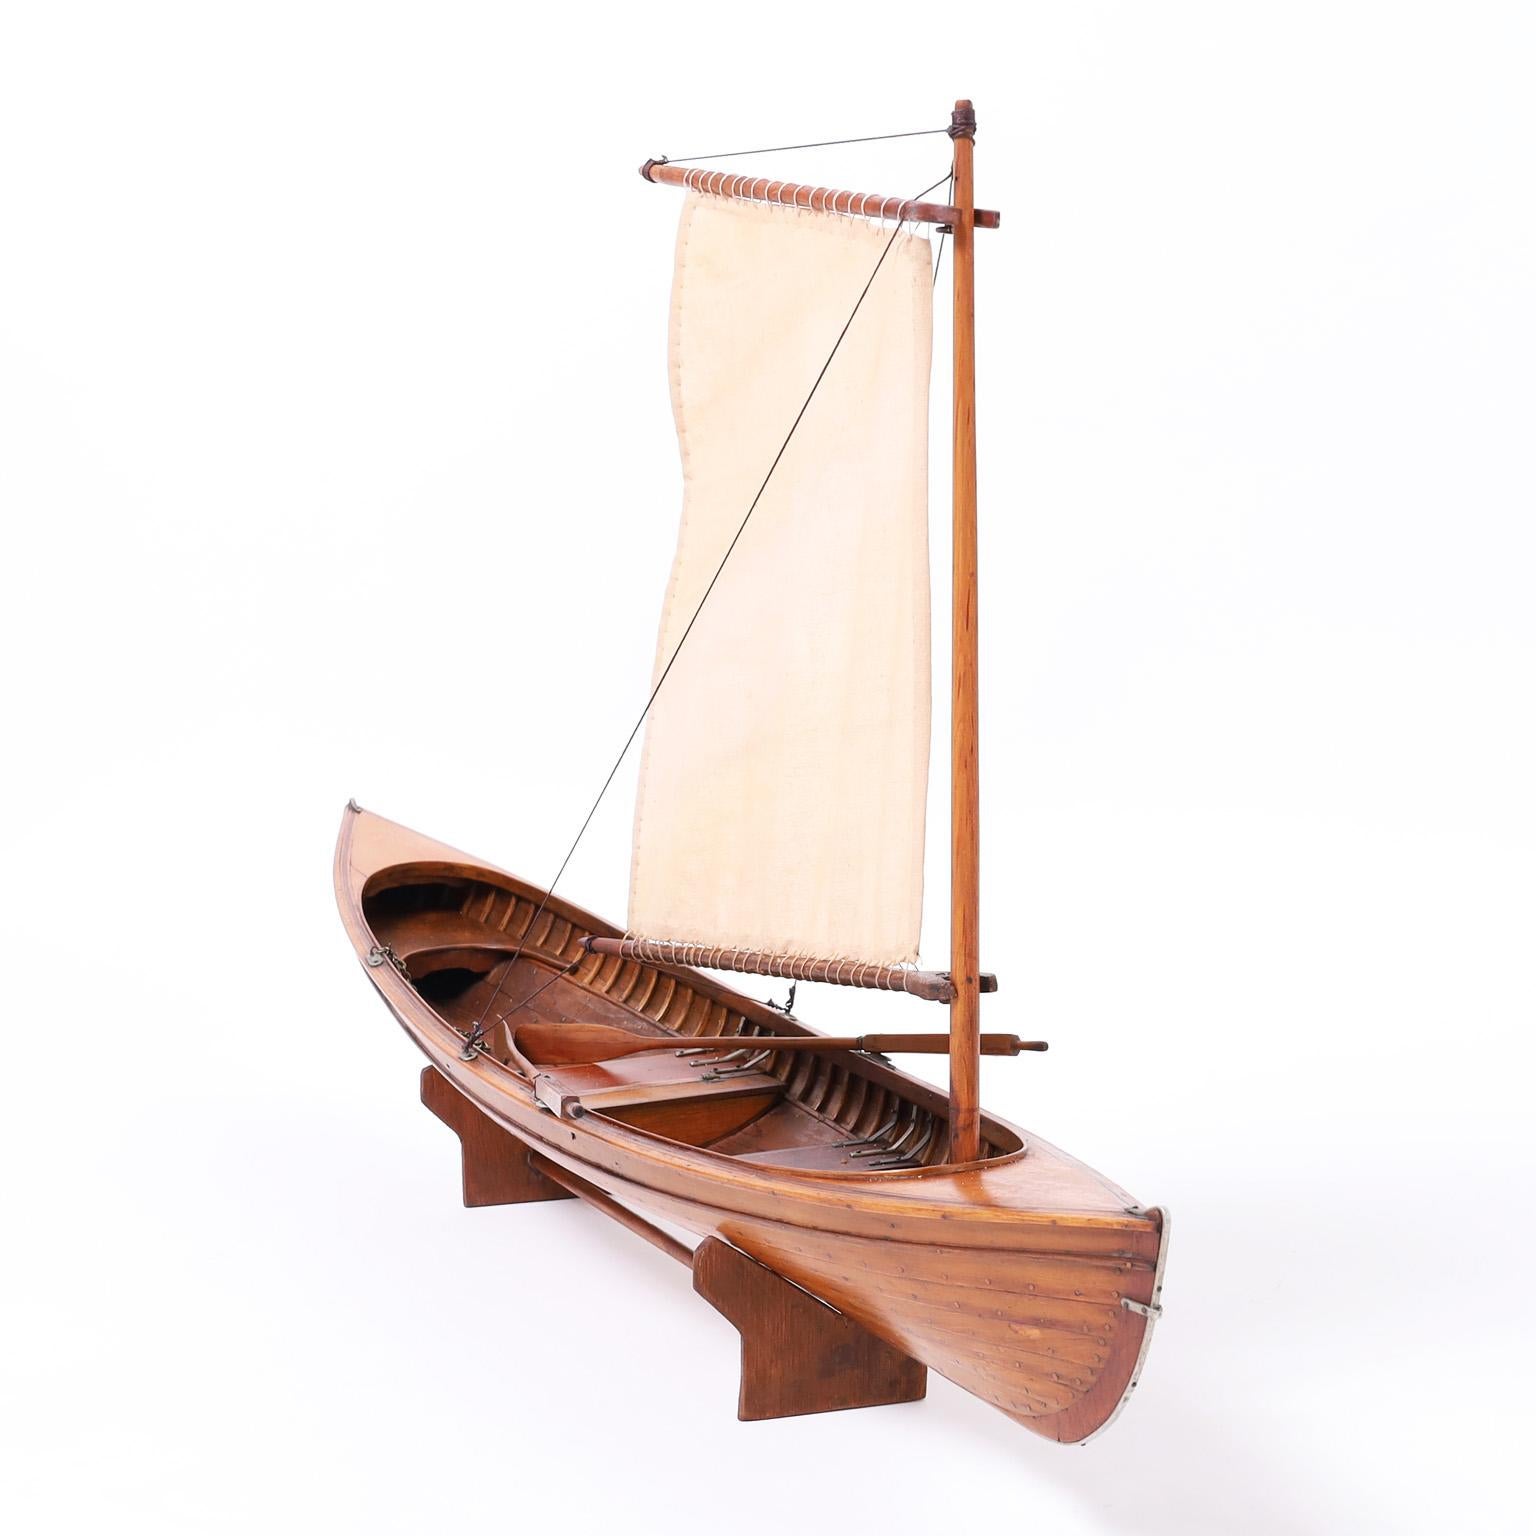 Magnifique maquette anglaise Edwardian de skiff à rames sur la Tamise avec vente, fabriquée à la main en acajou avec une précision ambitieuse. Présenté sur un socle en bois travaillé à la main.